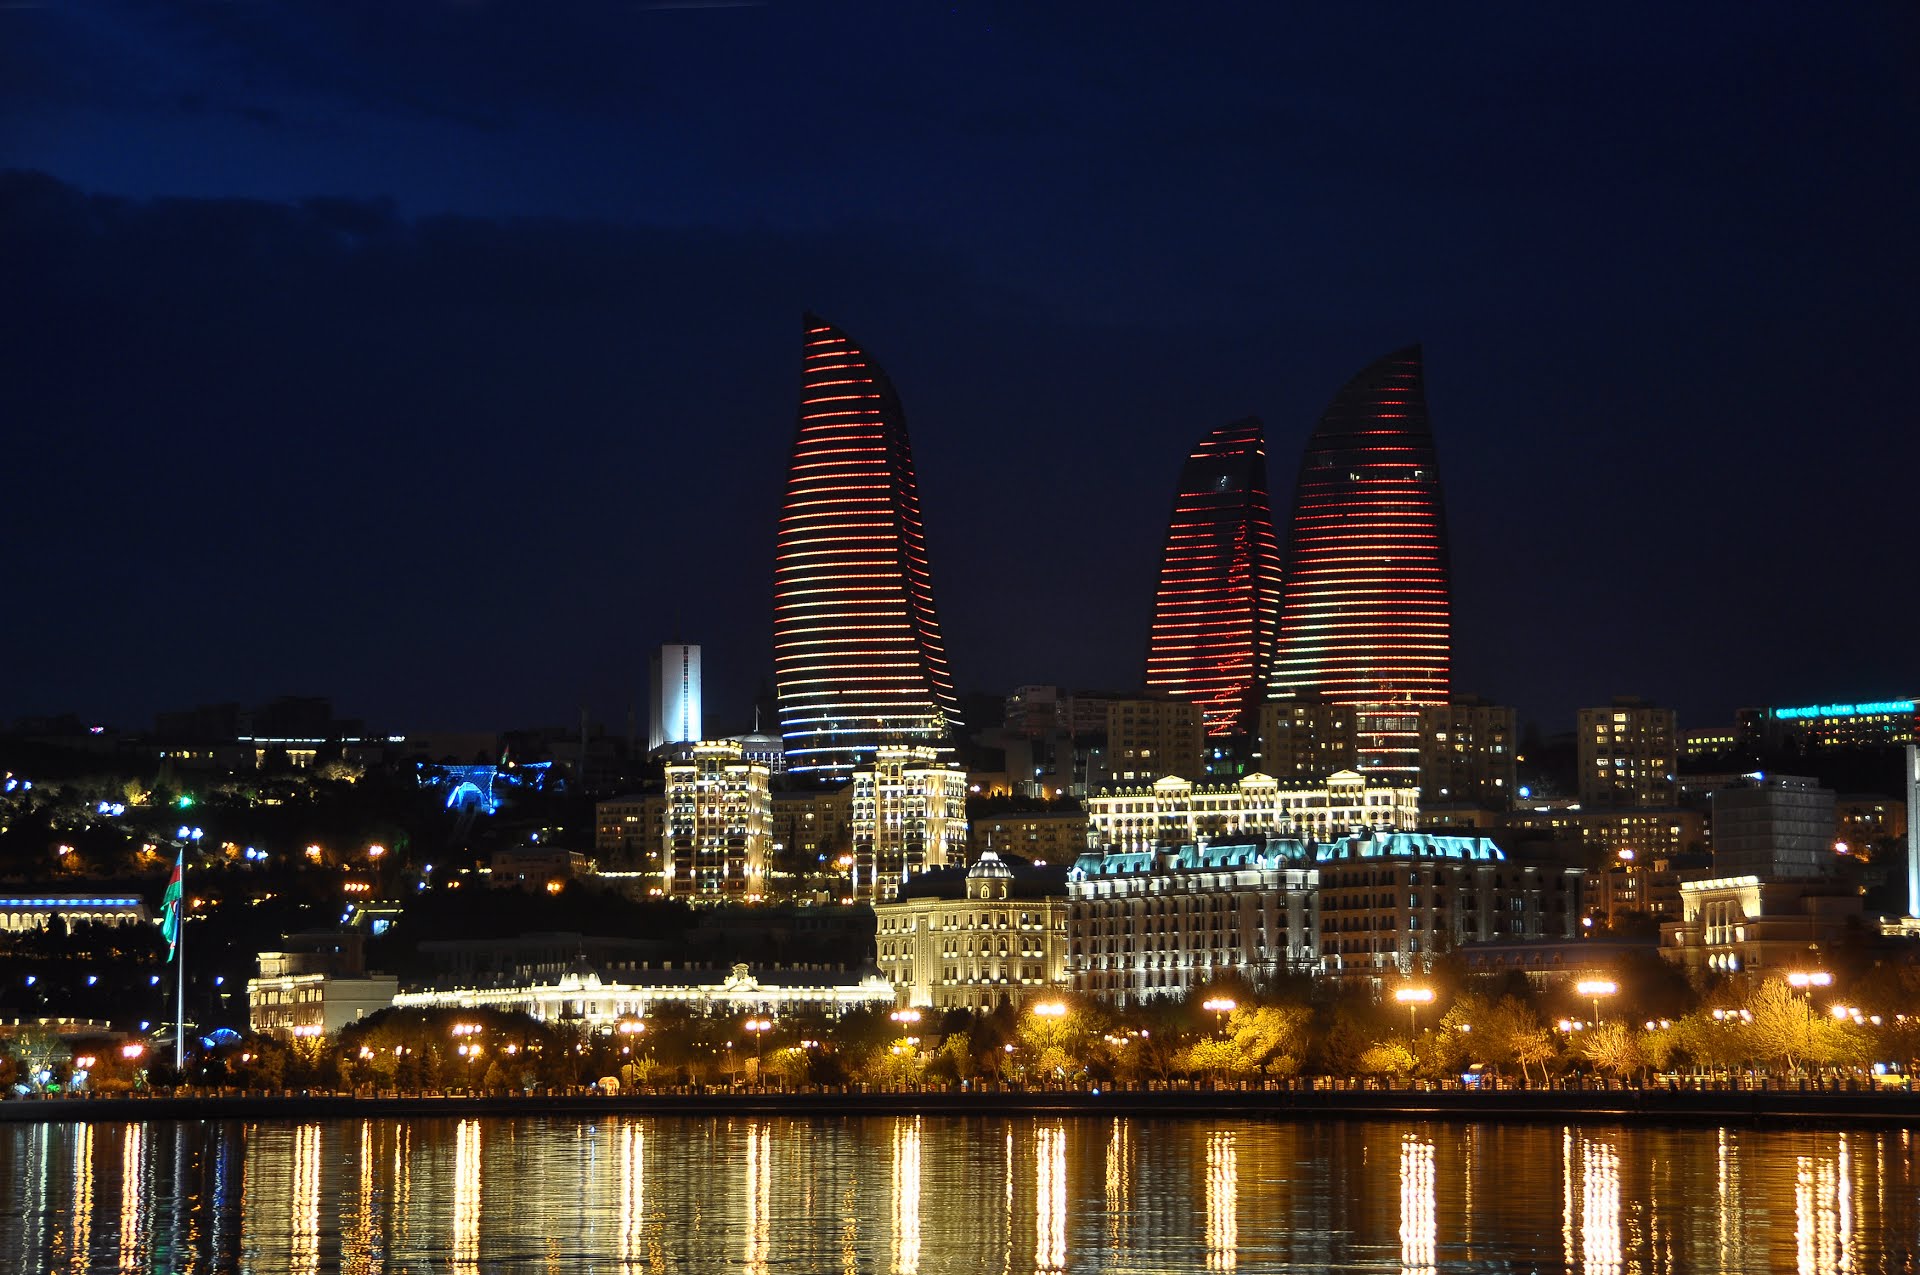 Баку башни пламени фото